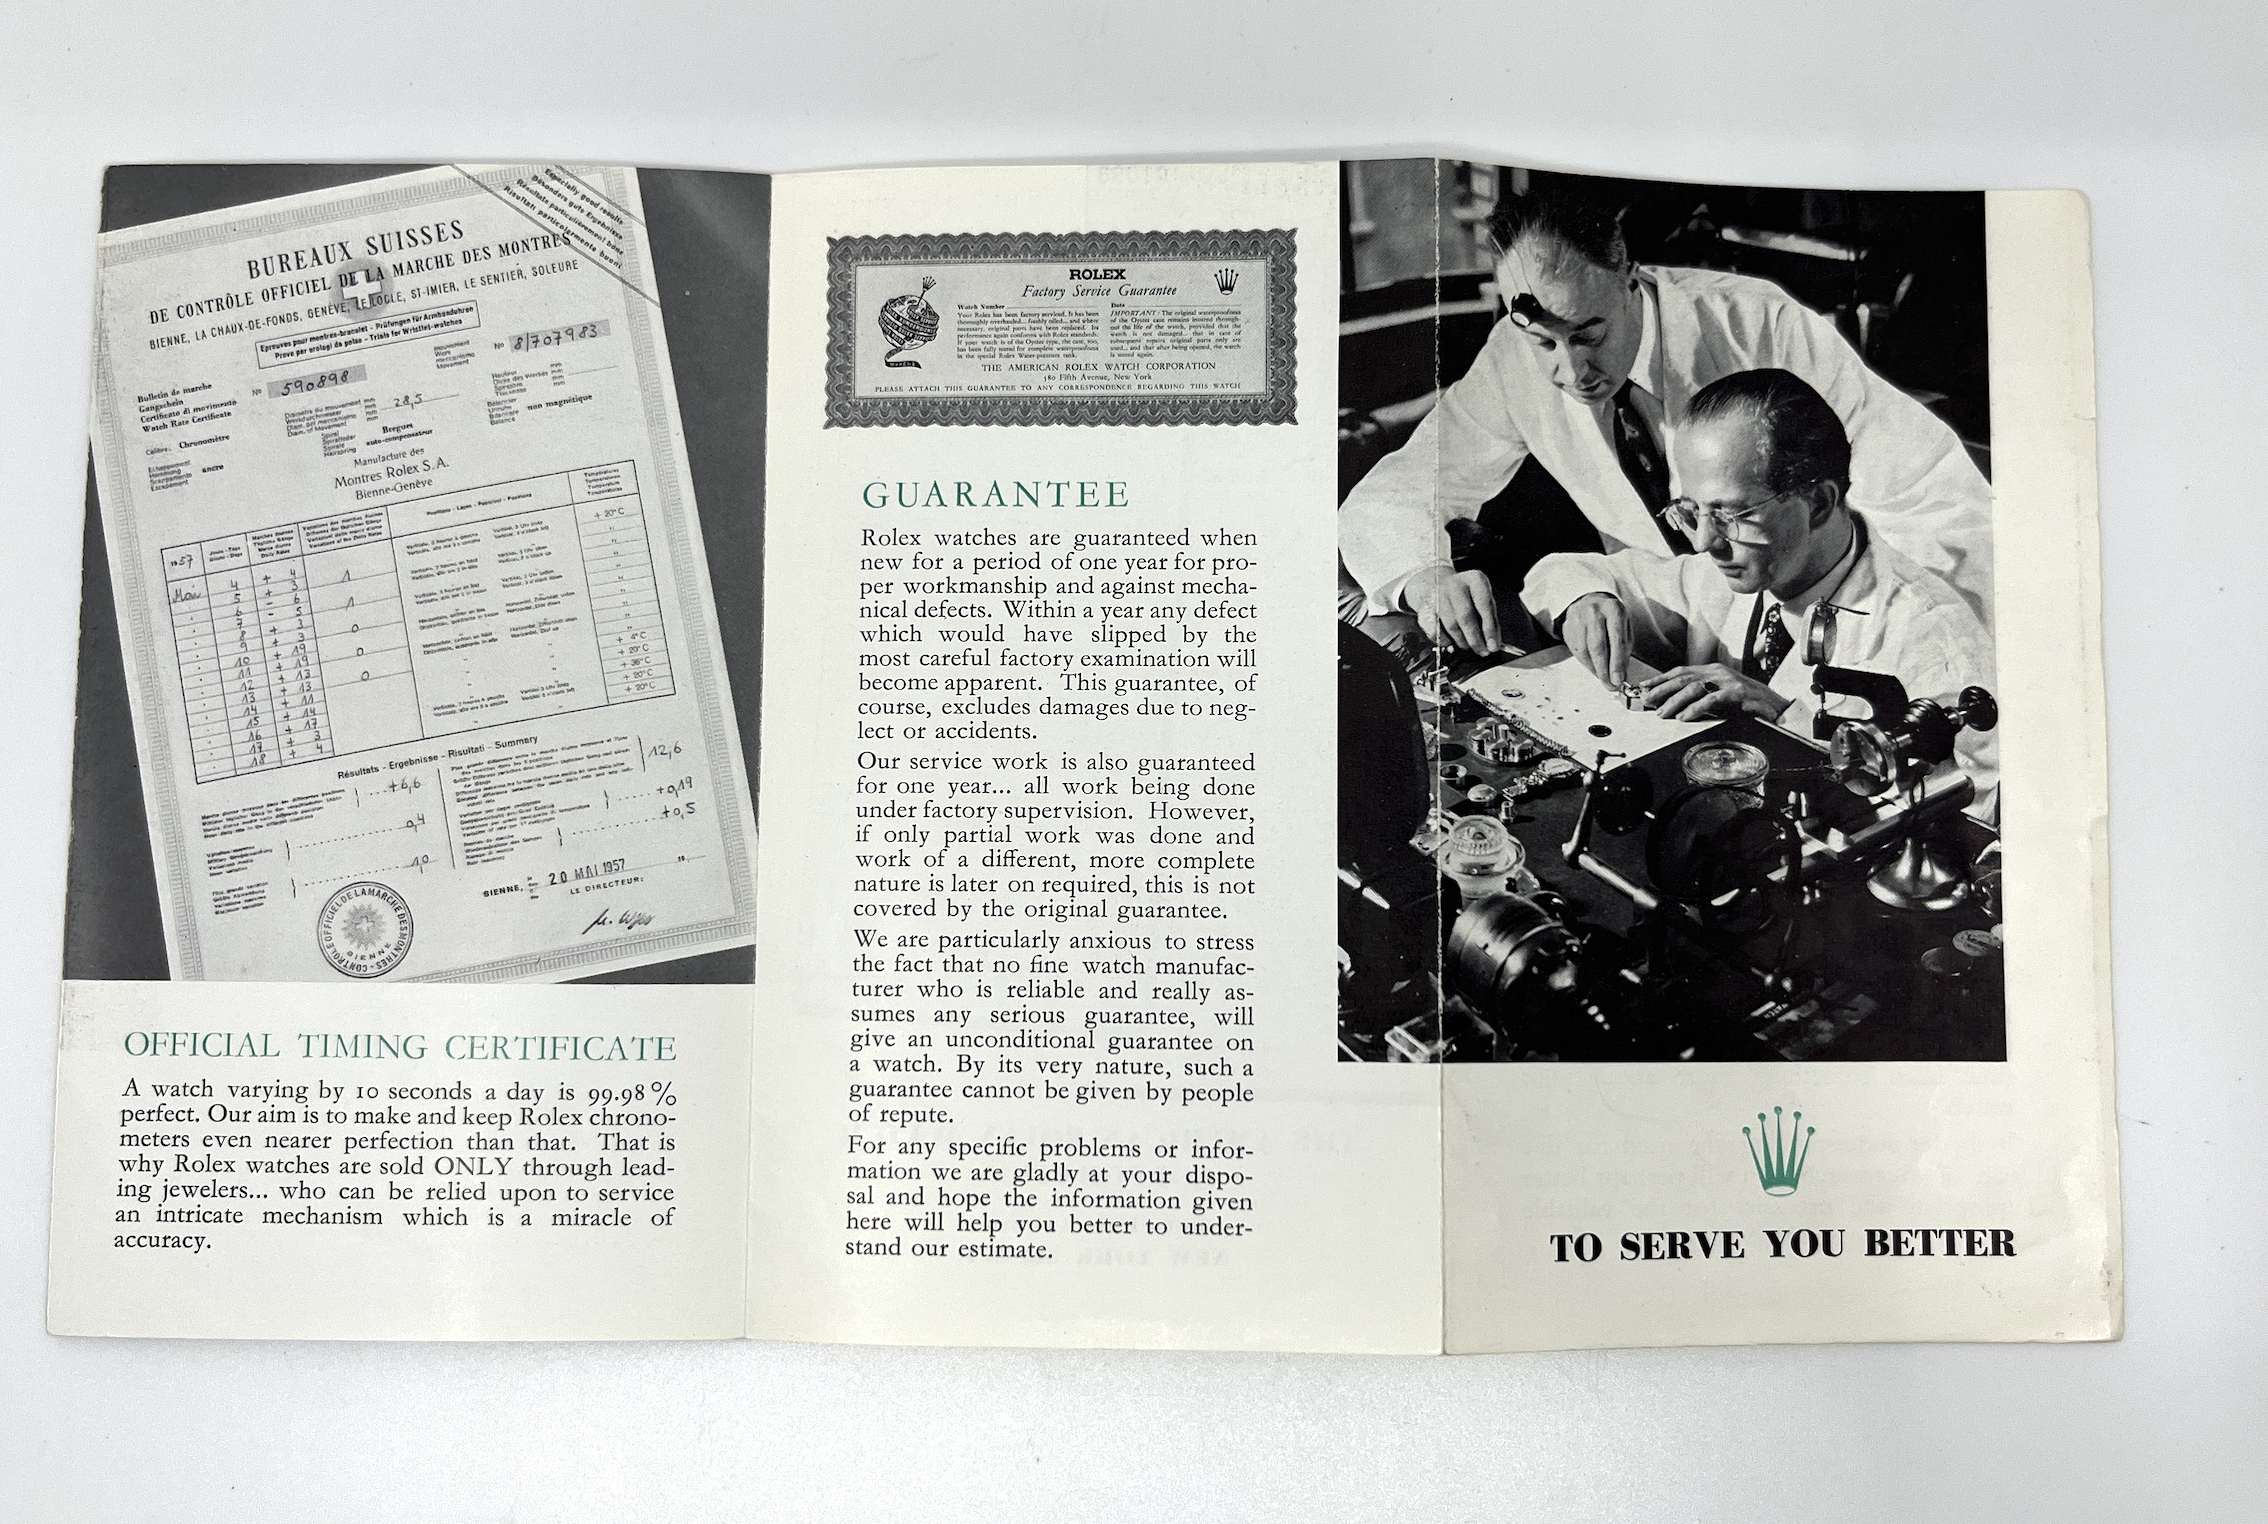 gebraucht Rolex Faltbroschüre von 1957 in englisch